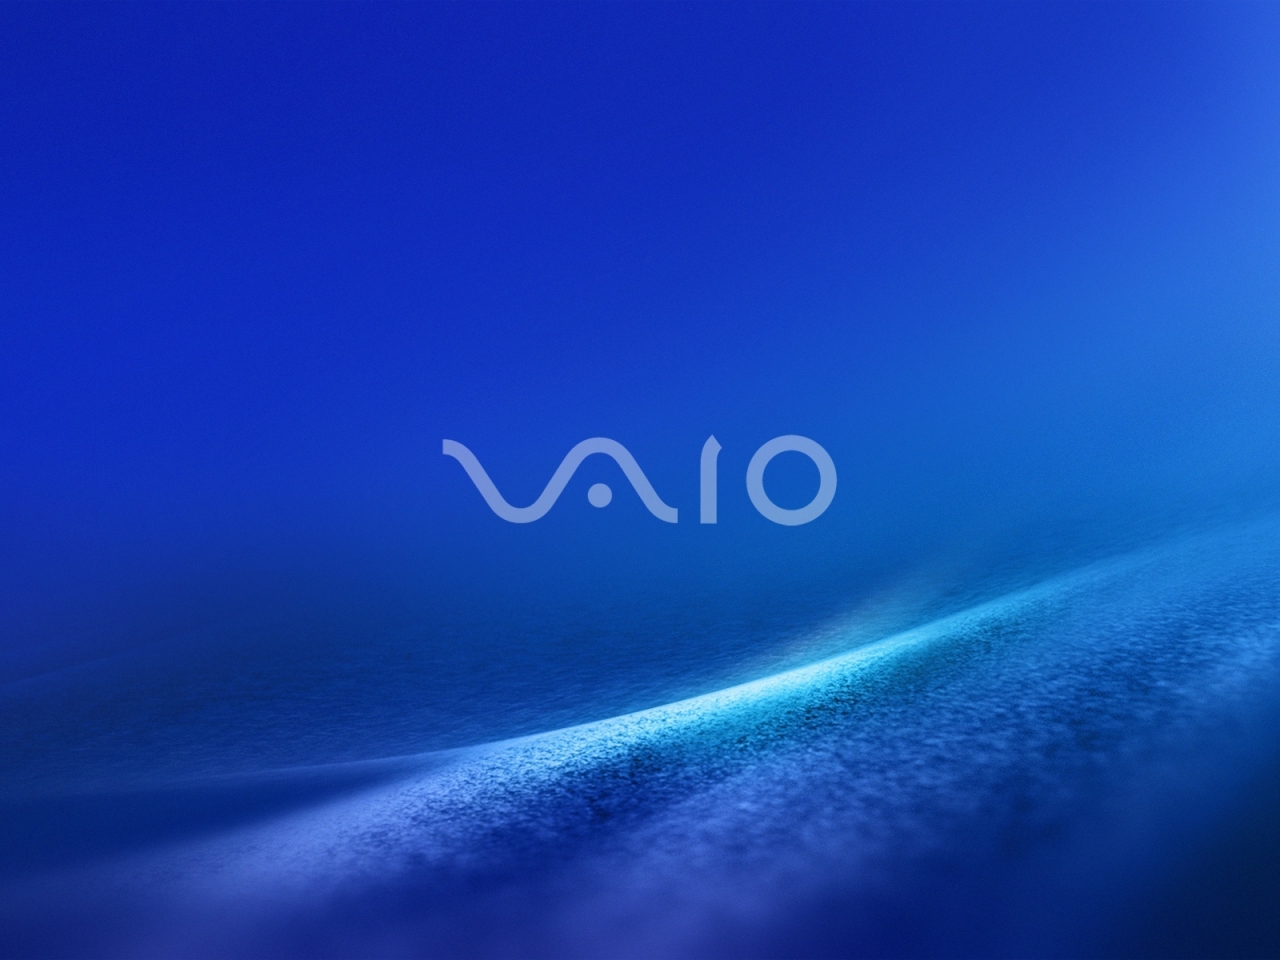 Vaio Dark Blue for 1280 x 960 resolution